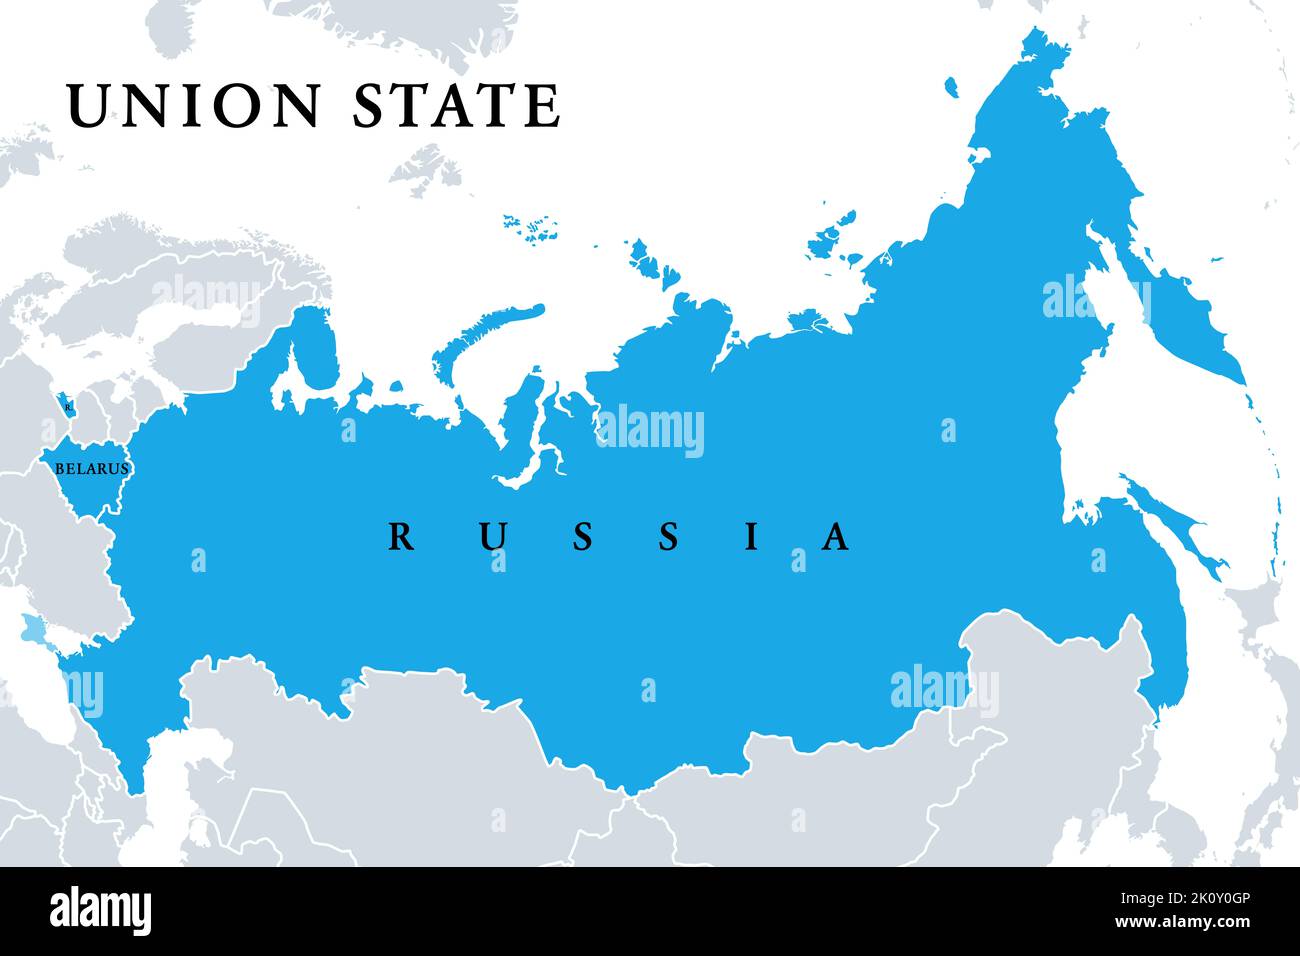 Unionsstaat, Mitgliedstaaten, politische Landkarte. Offiziell ist der Unionsstaat Russland und Belarus eine supranationale Organisation. Stockfoto